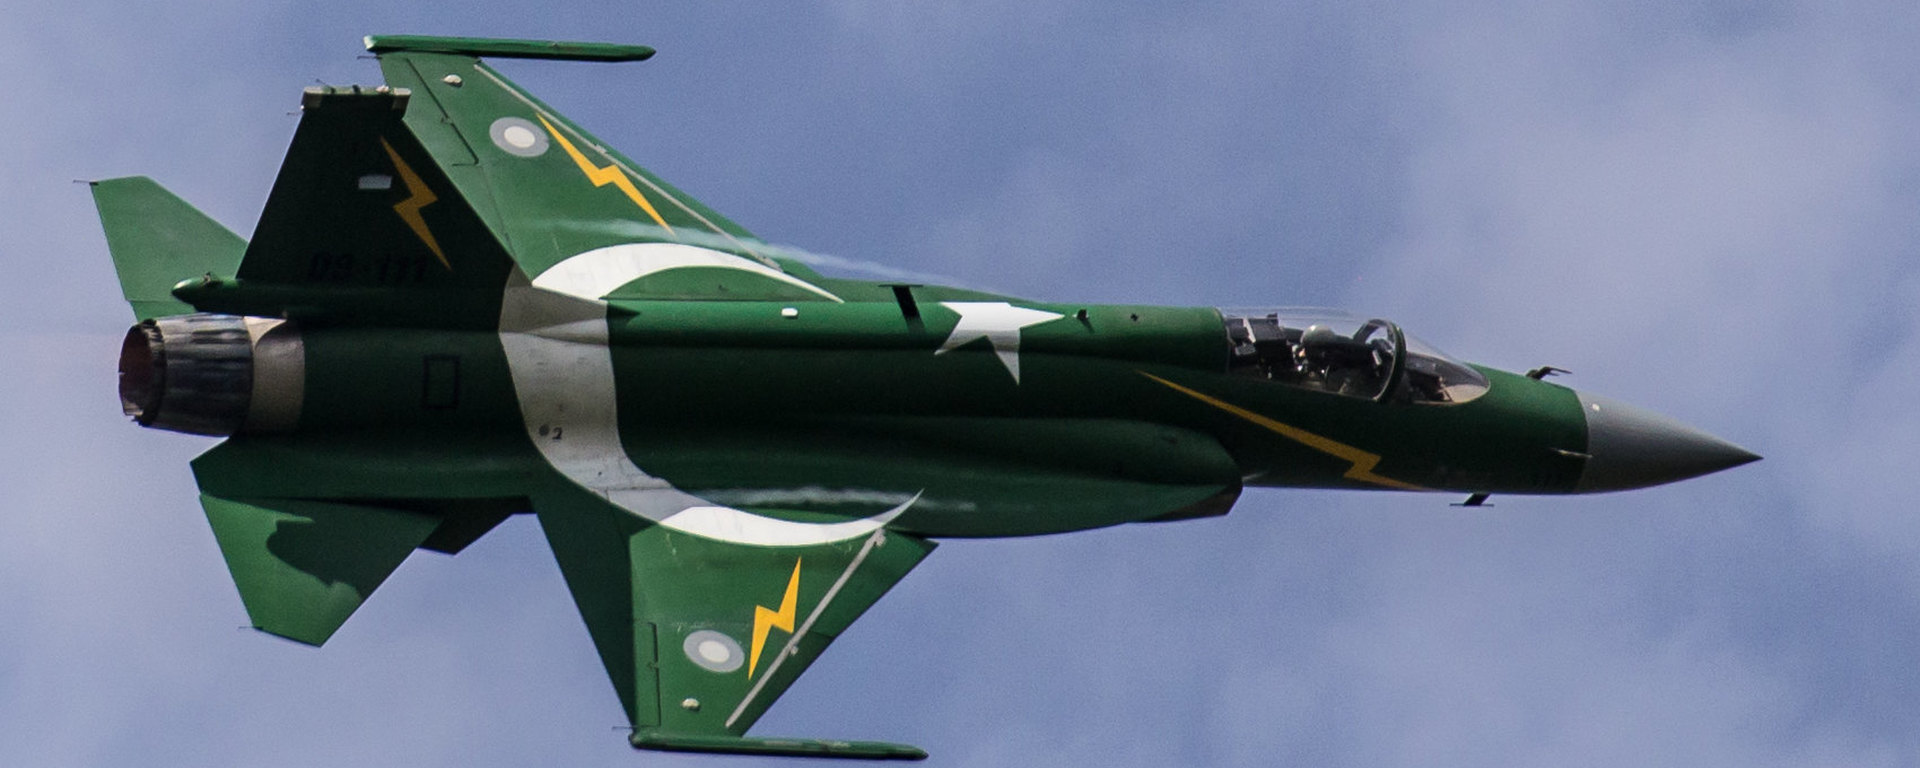 Պակիստանը պատրաստ է JF-17 ինքնաթիռներ տրամադրել Ադրբեջանին